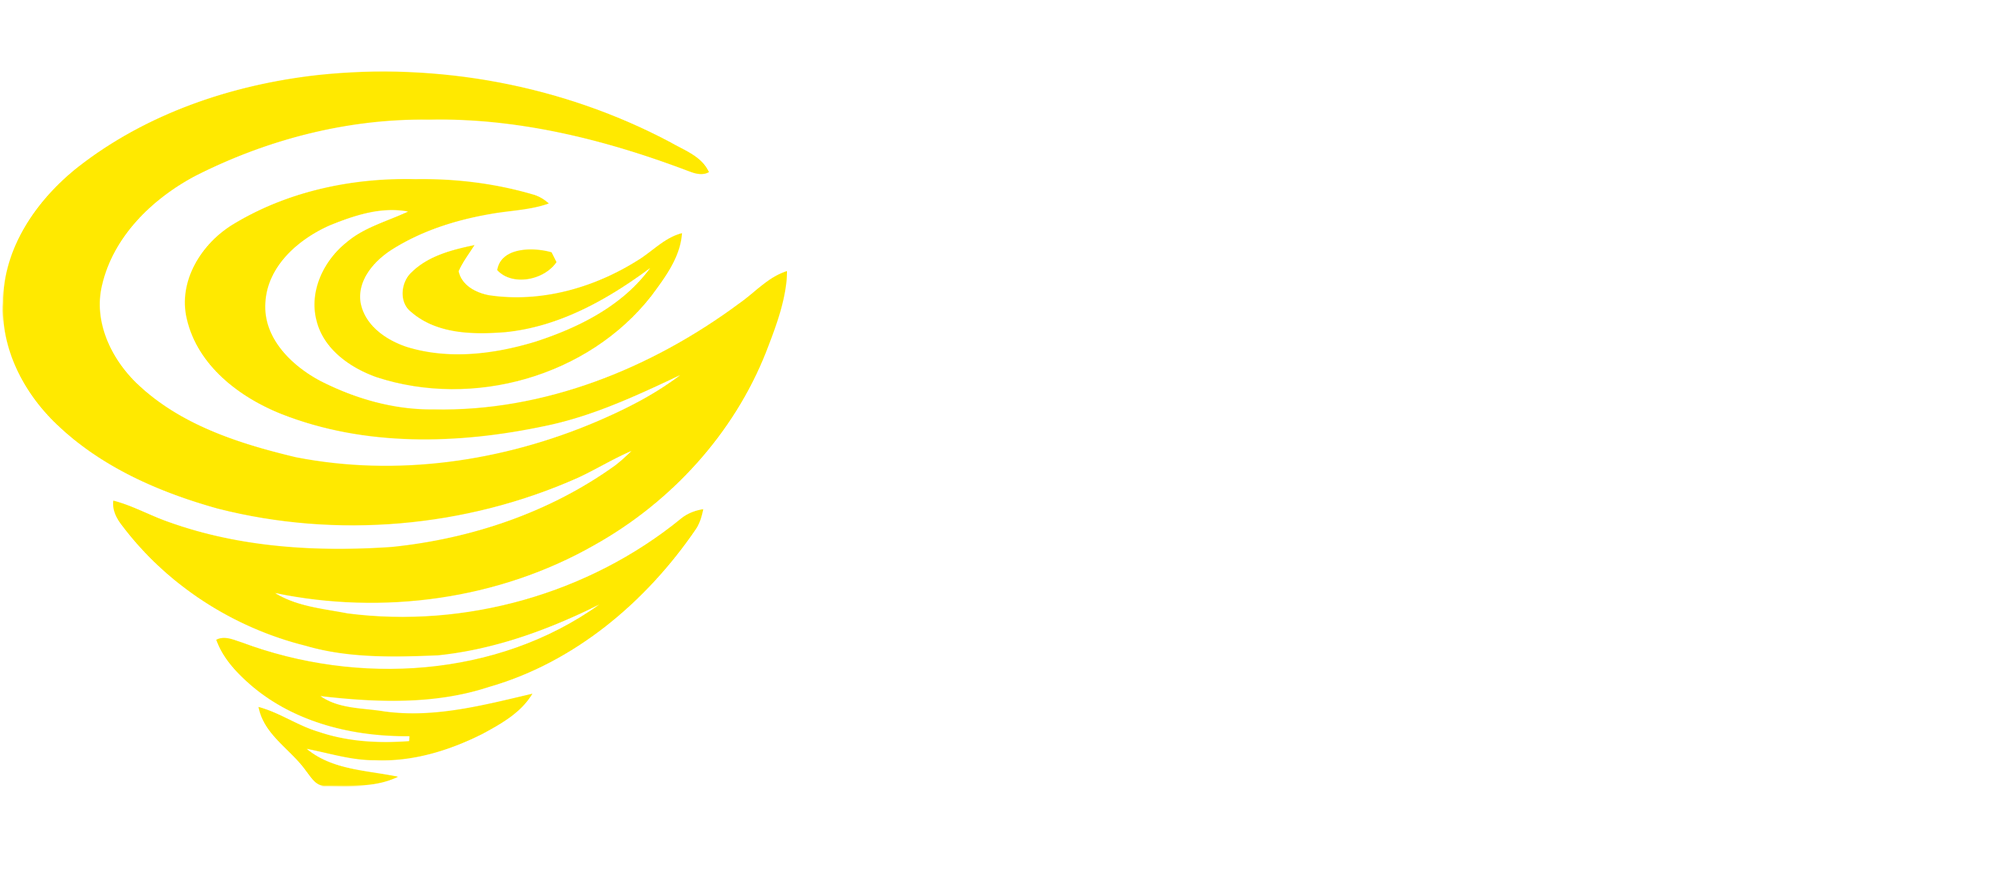 Tornado Movies